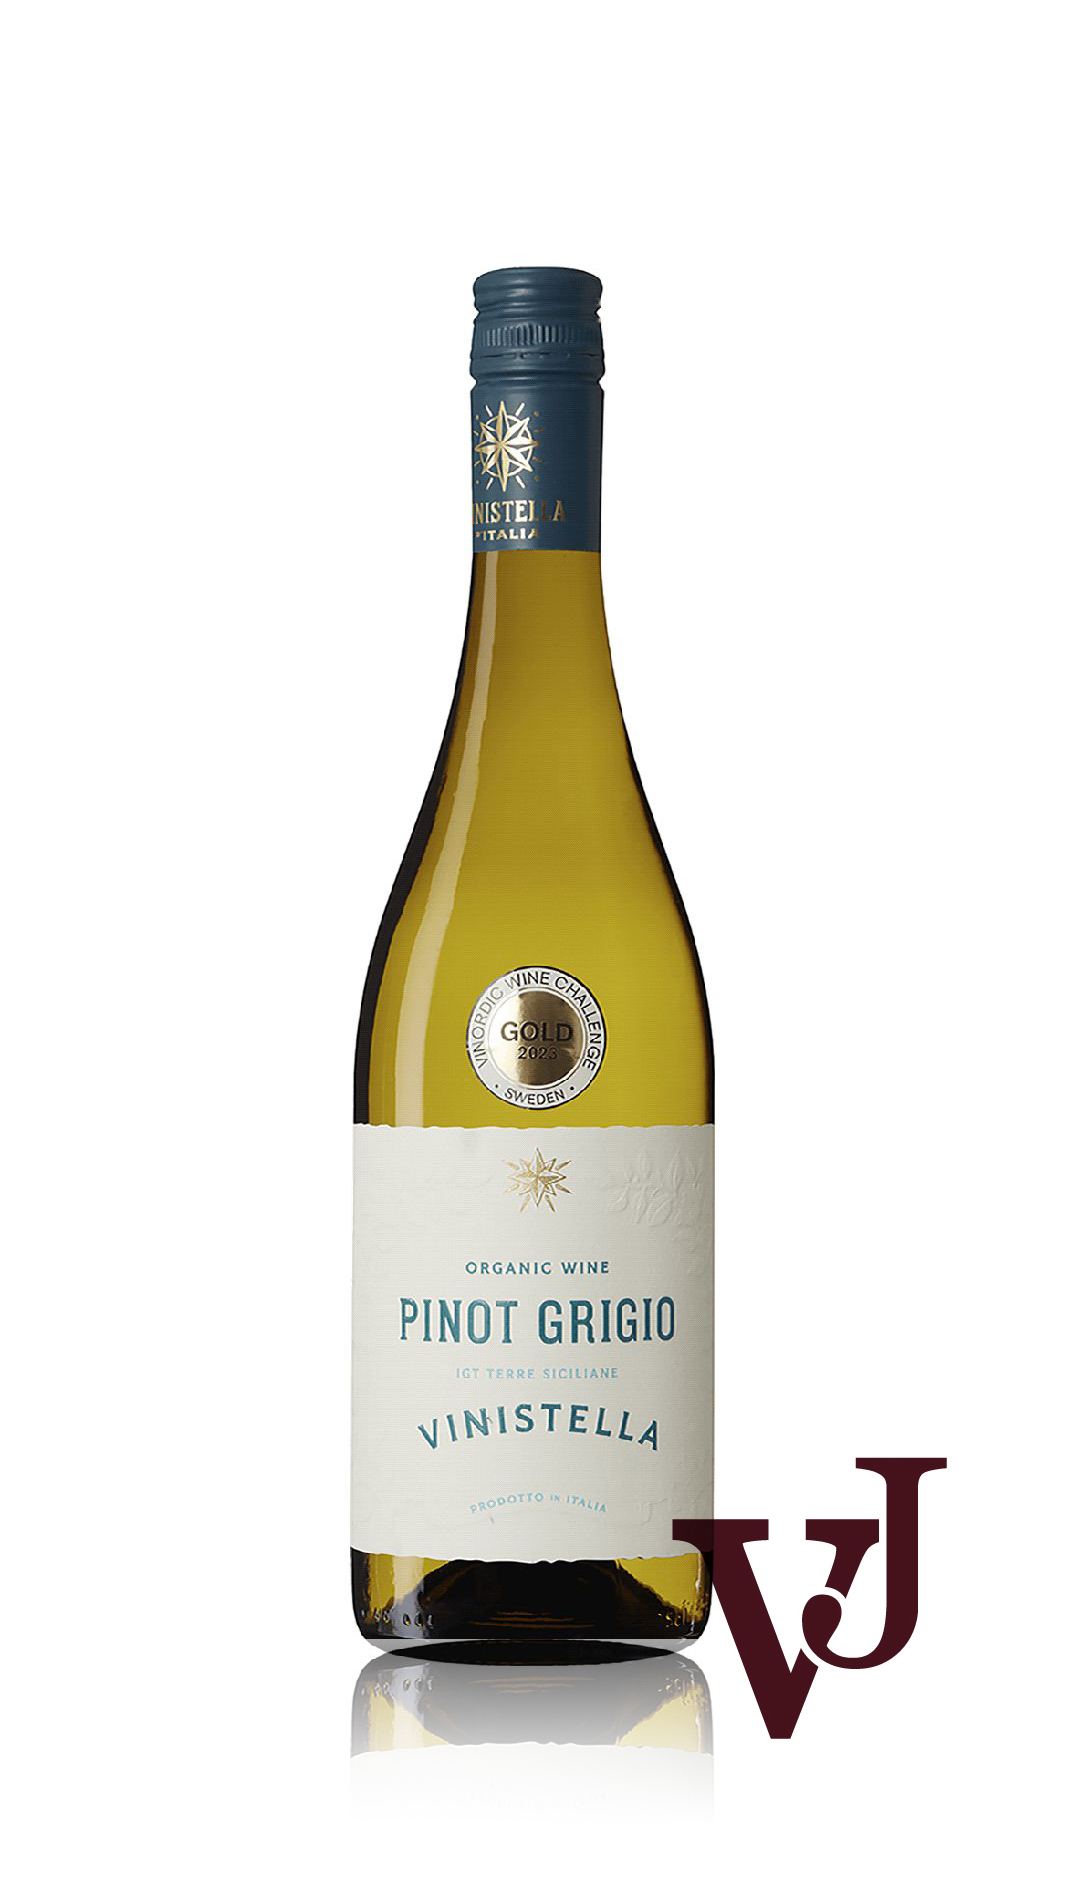 Vitt Vin - Vinistella Pinot Grigio artikel nummer 7592201 från producenten Vinimundi från området Italien